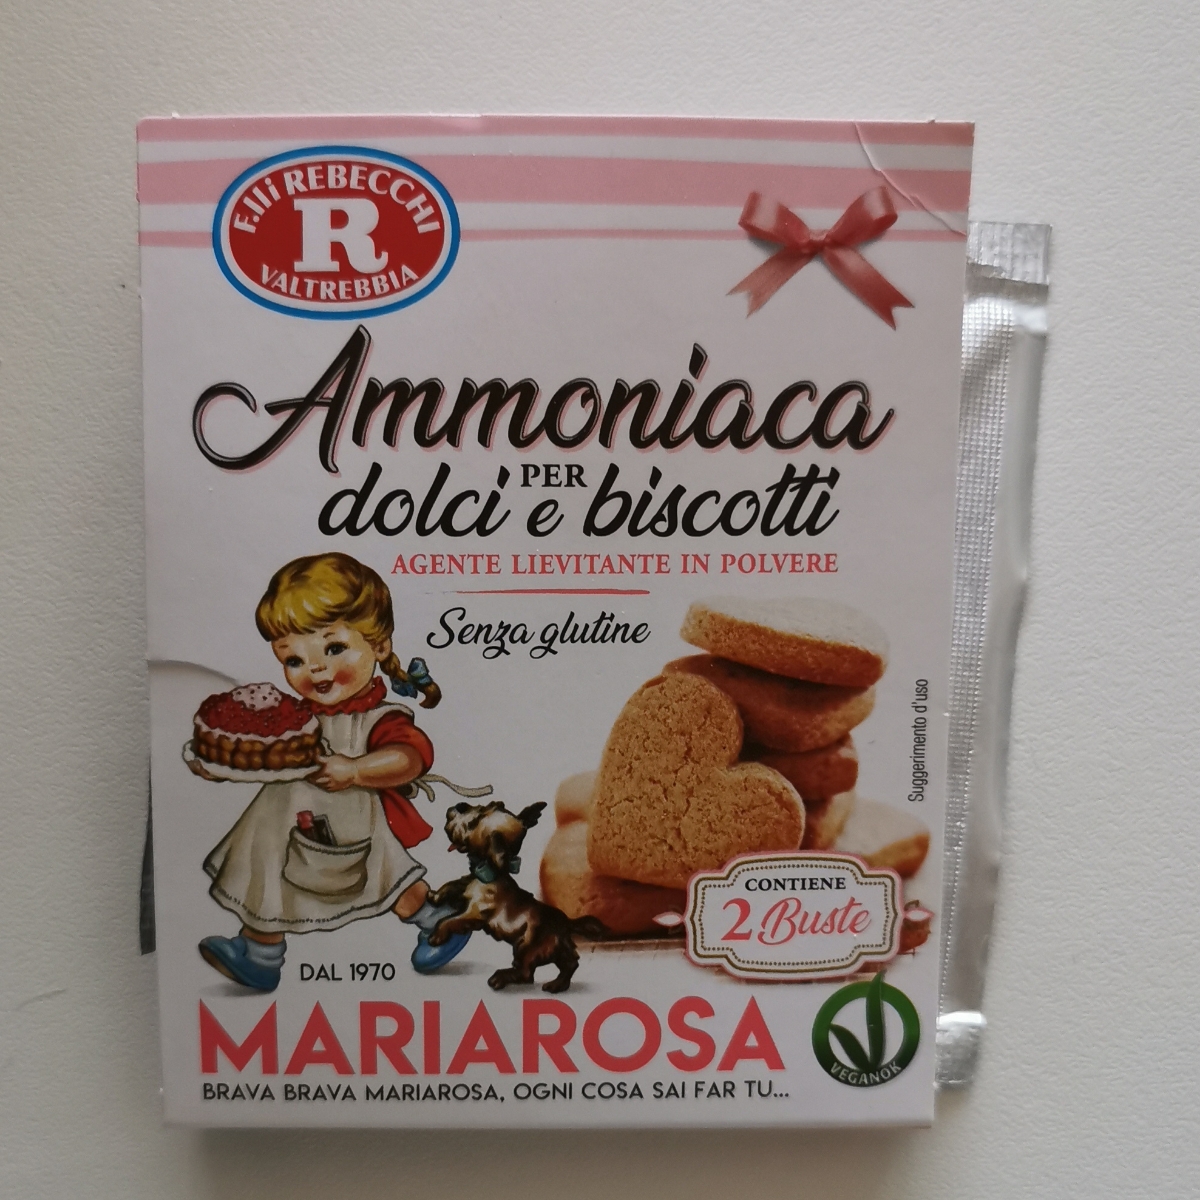 Fratelli Rebecchi Valtrebbia Ammoniaca per dolci Review | abillion